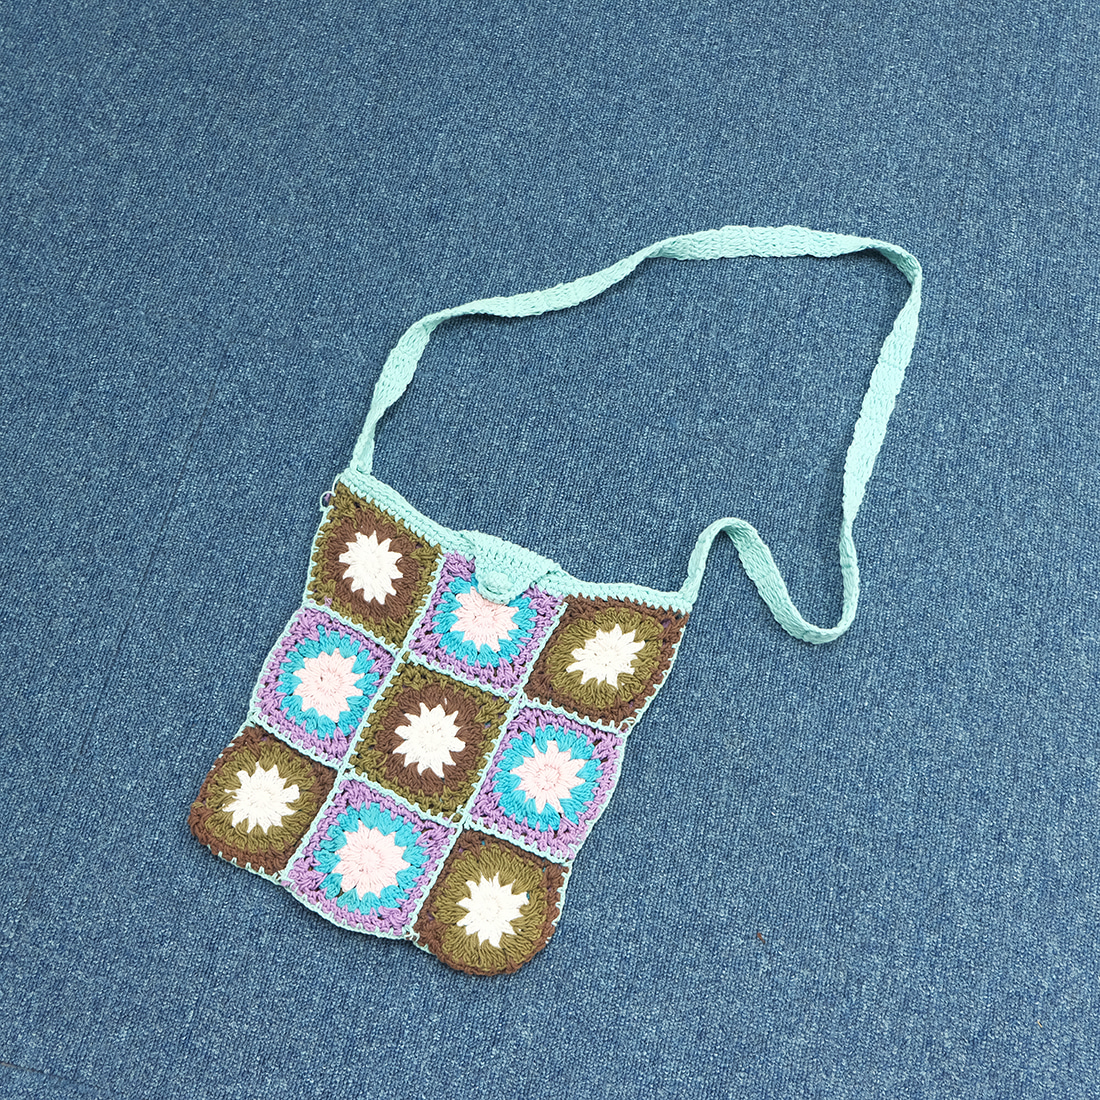  Knitting cross bag